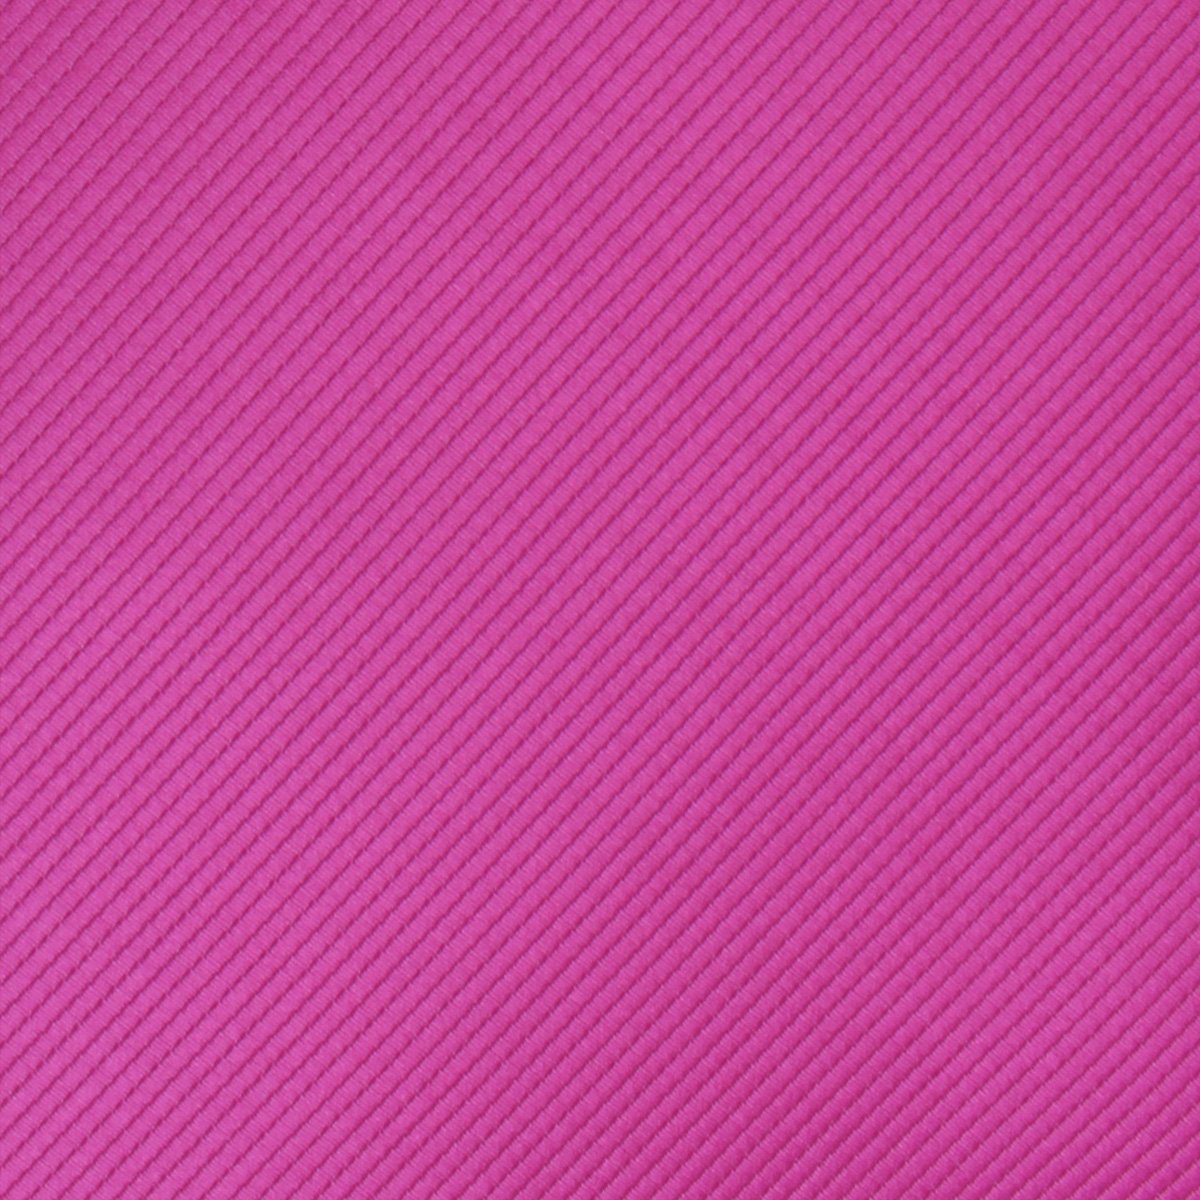 Fuchsia Pink Twill Fabric Swatch